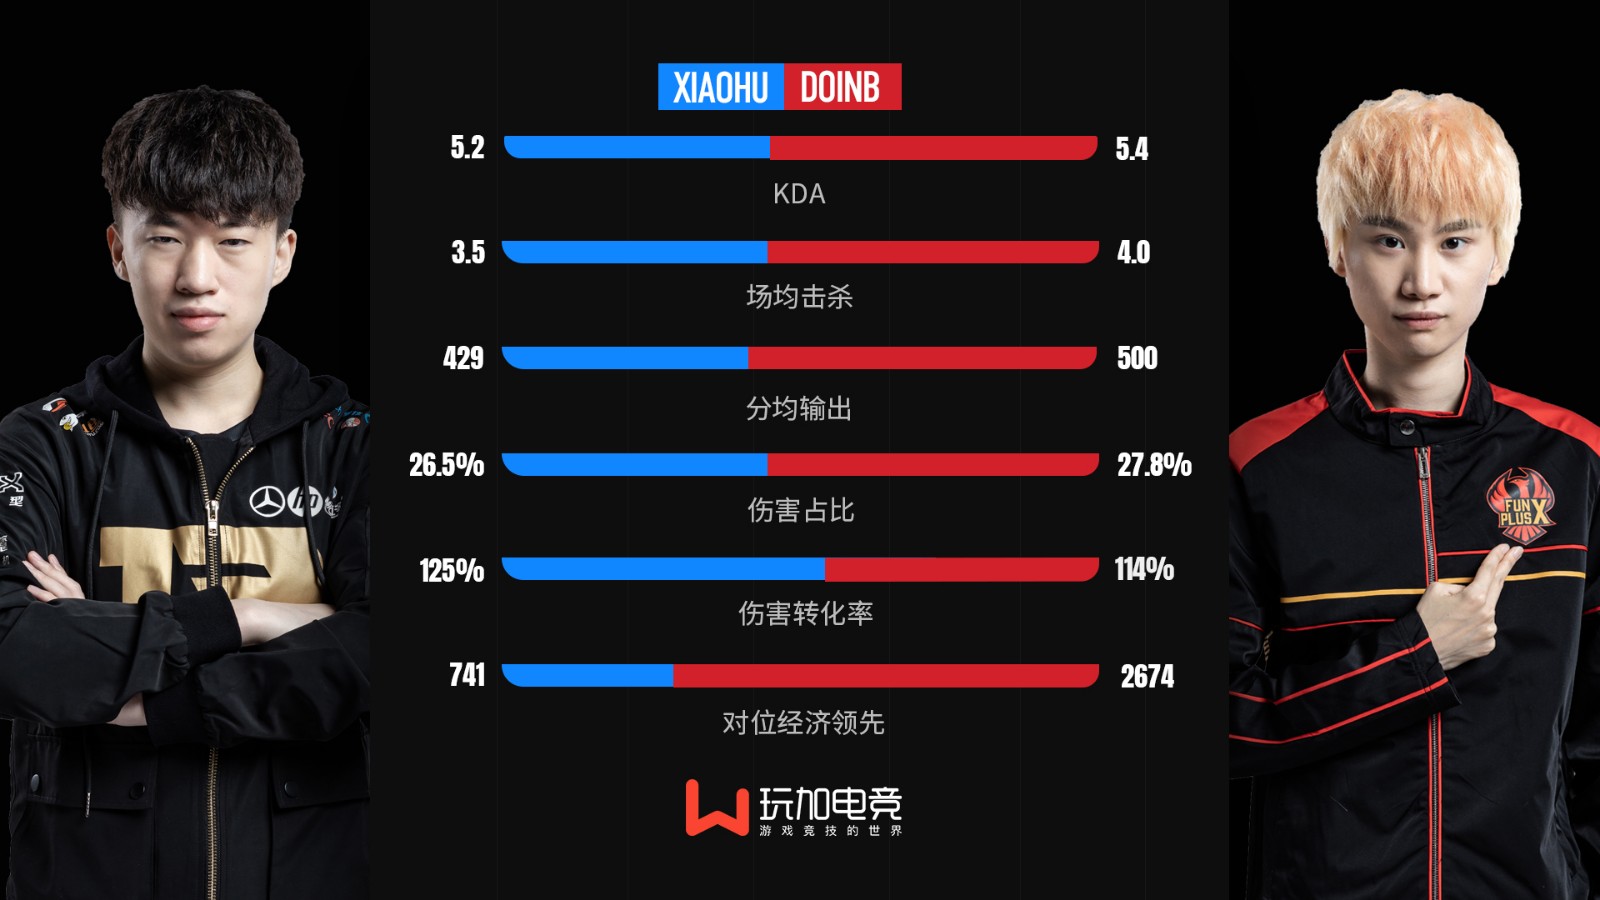 [选手数据对比] Doinb vs Xiaohu 谁的辐射圈更胜一筹